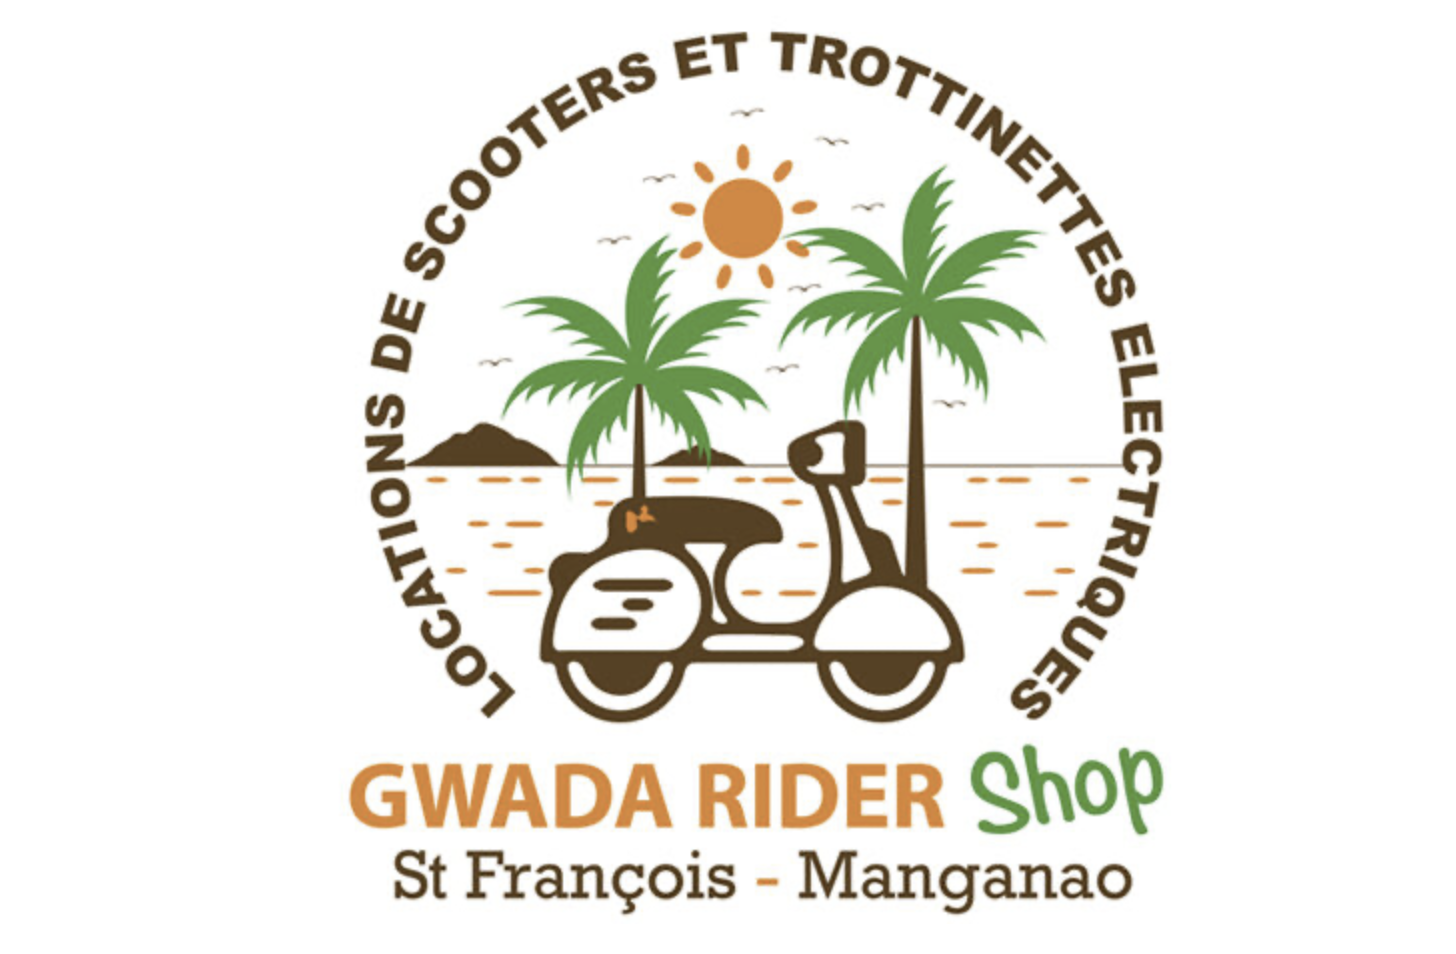 Gwada rider